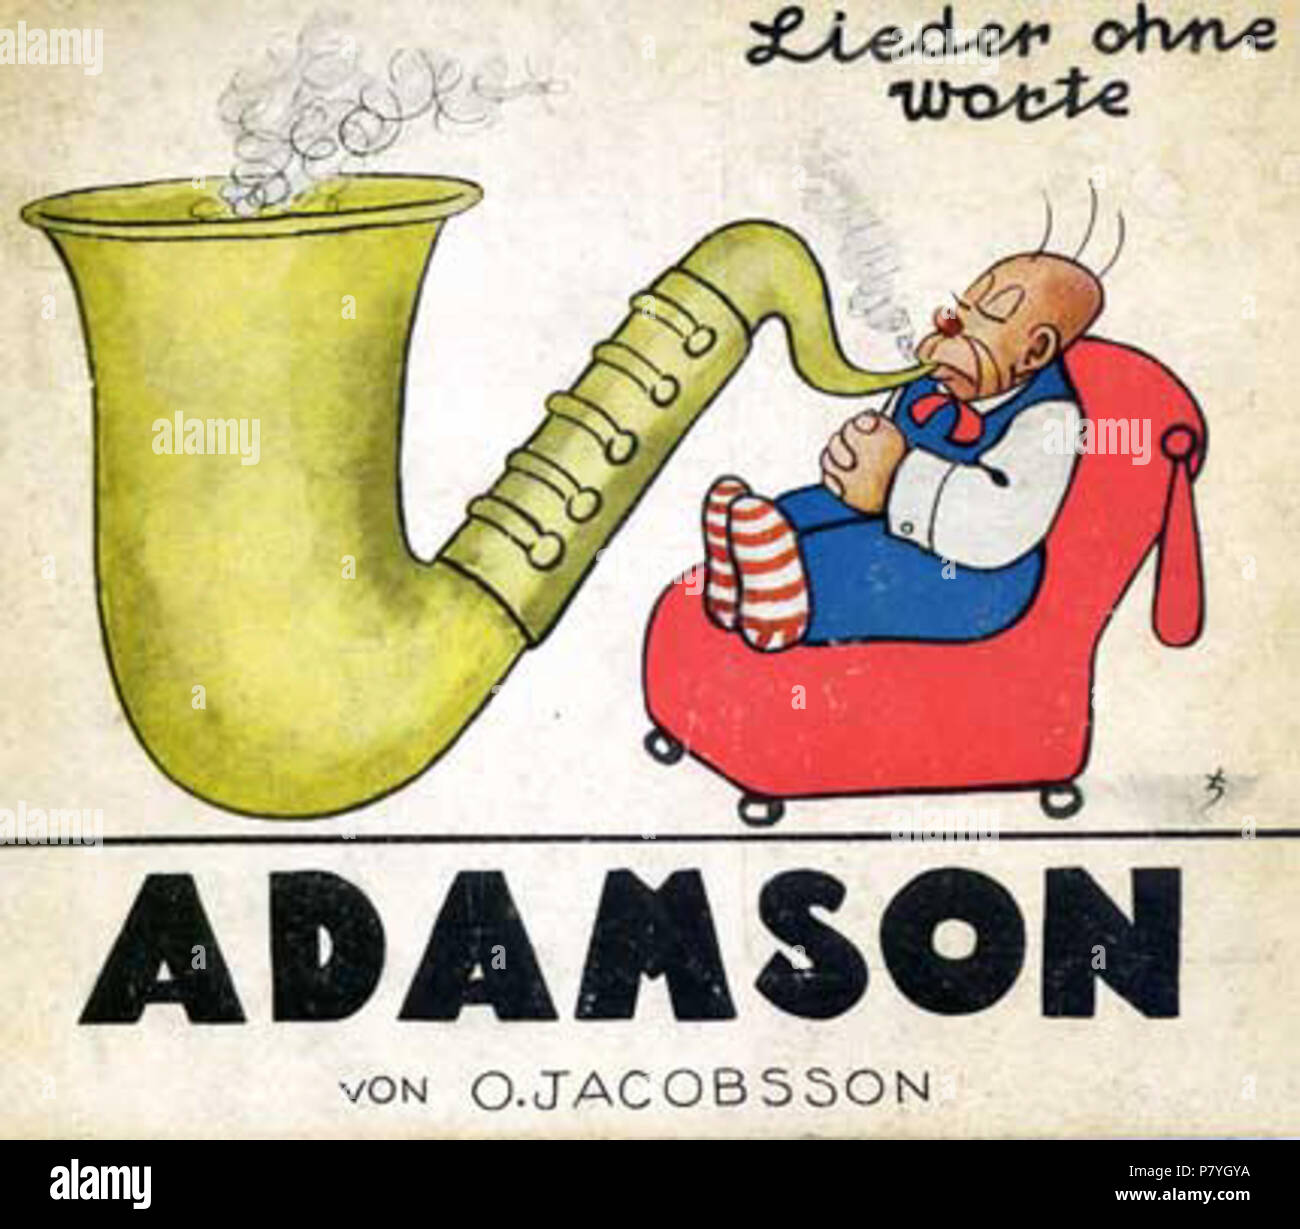 Deutsch: Oscar Jacobsson Adamson Lieder ohne Worte . before 1945 296 Oscar Jacobsson Adamson Lieder ohne Worte Stock Photo